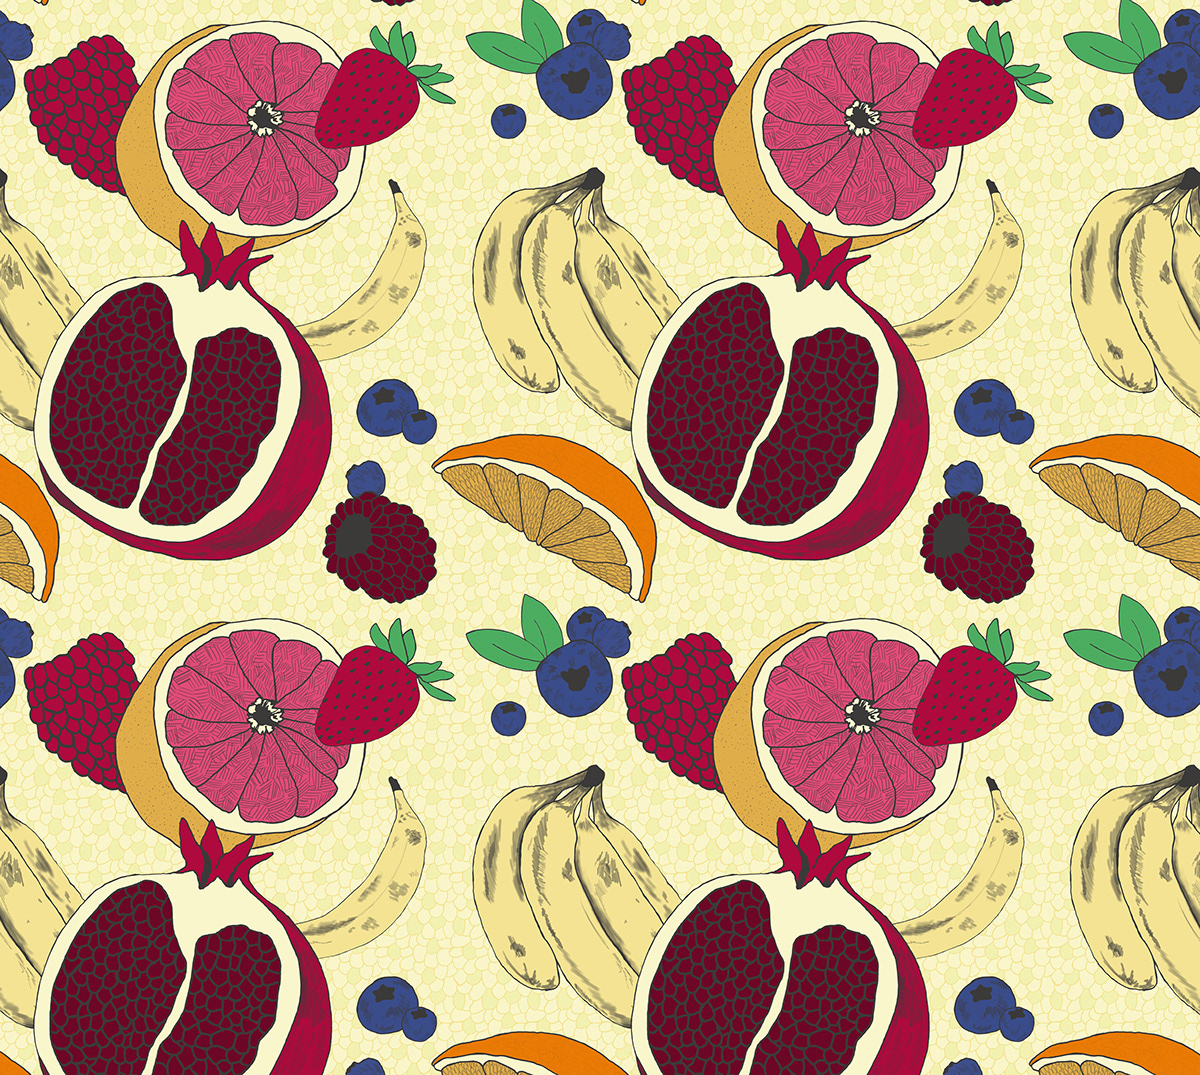 Repeat Pattern print pattern fibers Textiles Fruit berries repeat hand drawn